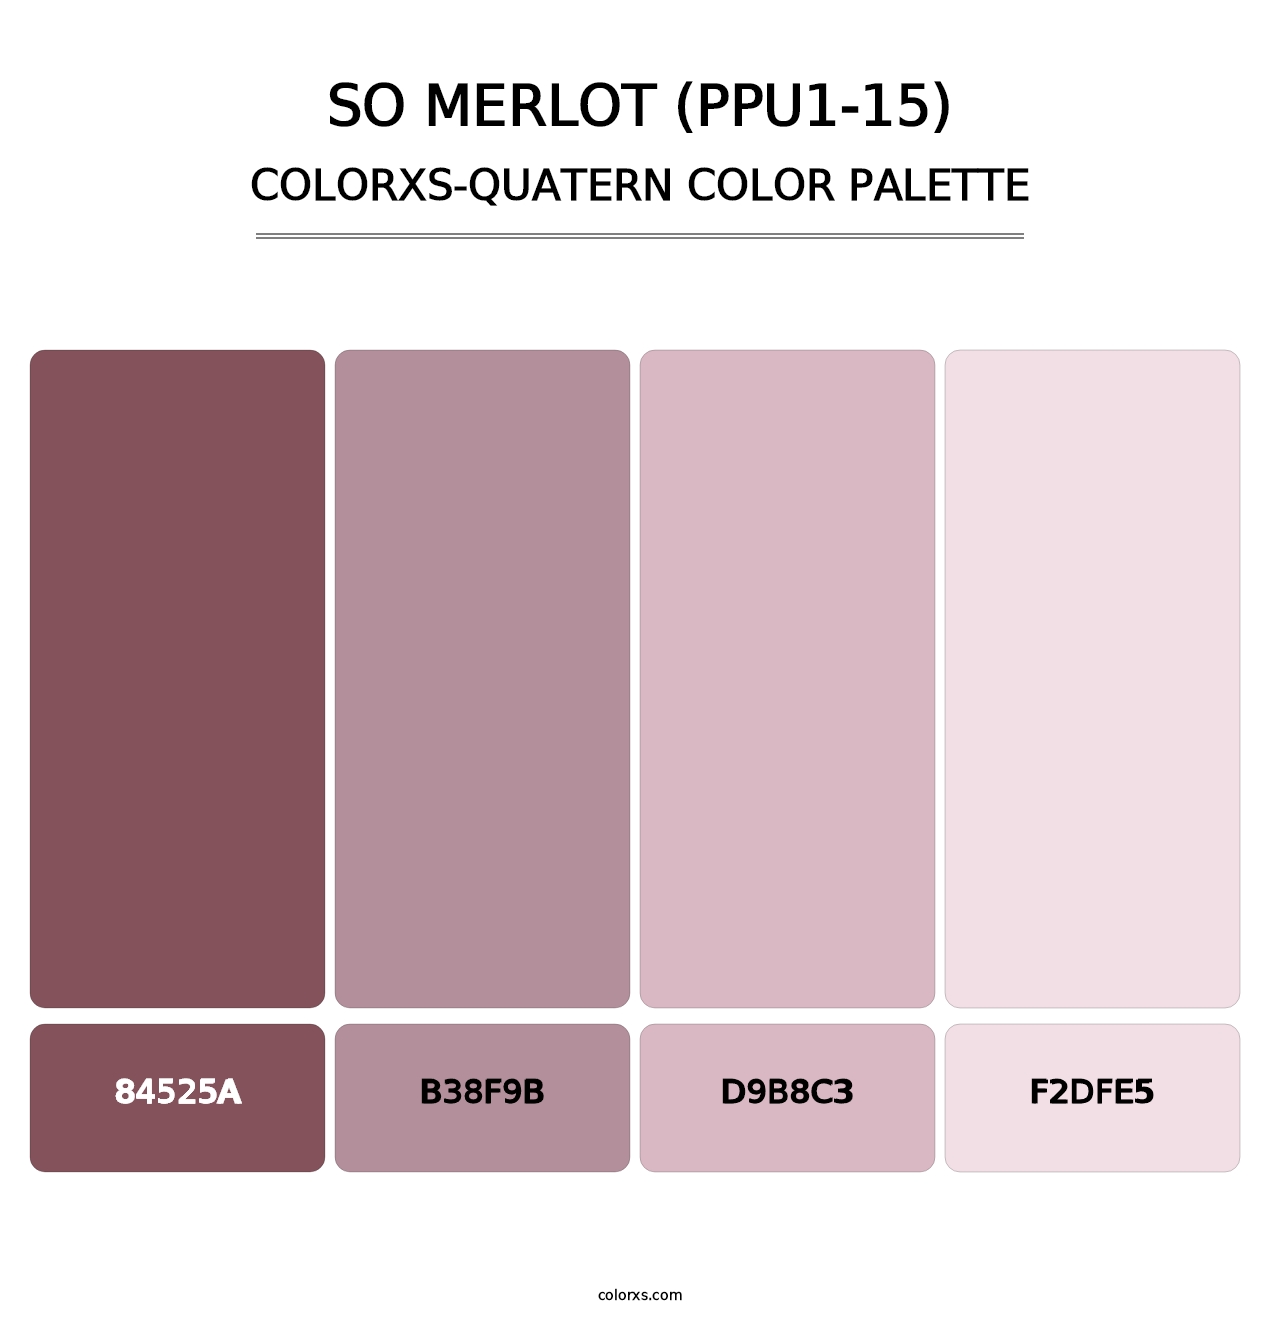 So Merlot (PPU1-15) - Colorxs Quatern Palette